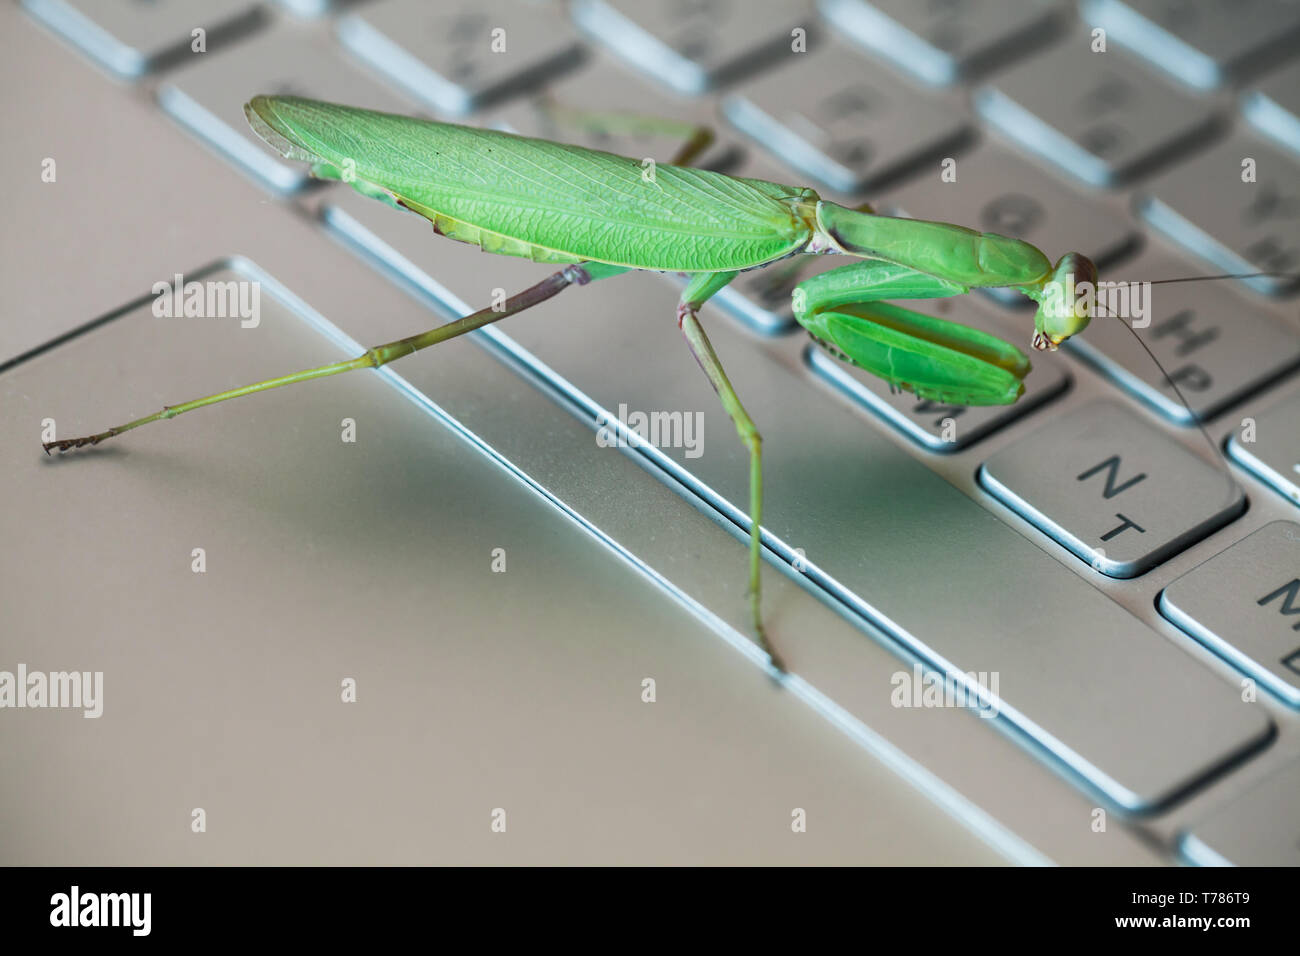 Bug Software metafora, verde mantis è su un portatile con tastiera inglese e lettere in russo Foto Stock